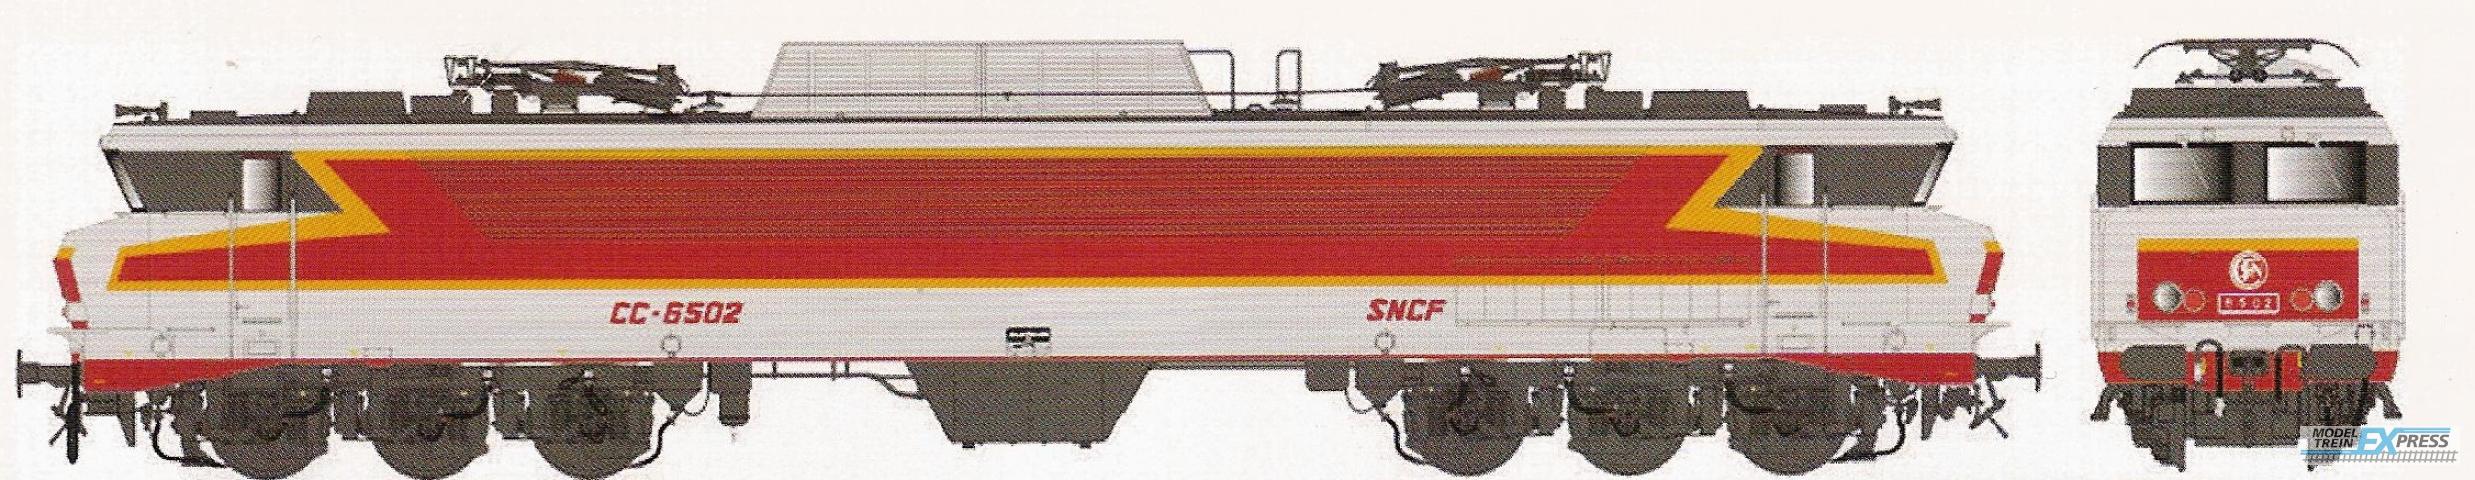 LS Models 10320 CC 6502, metaalgrijs/rood/oranje, TEE, platen, Beffara logo, zuidoost  /  Ep. IV  /  SNCF  /  HO  /  DC  /  1 P.